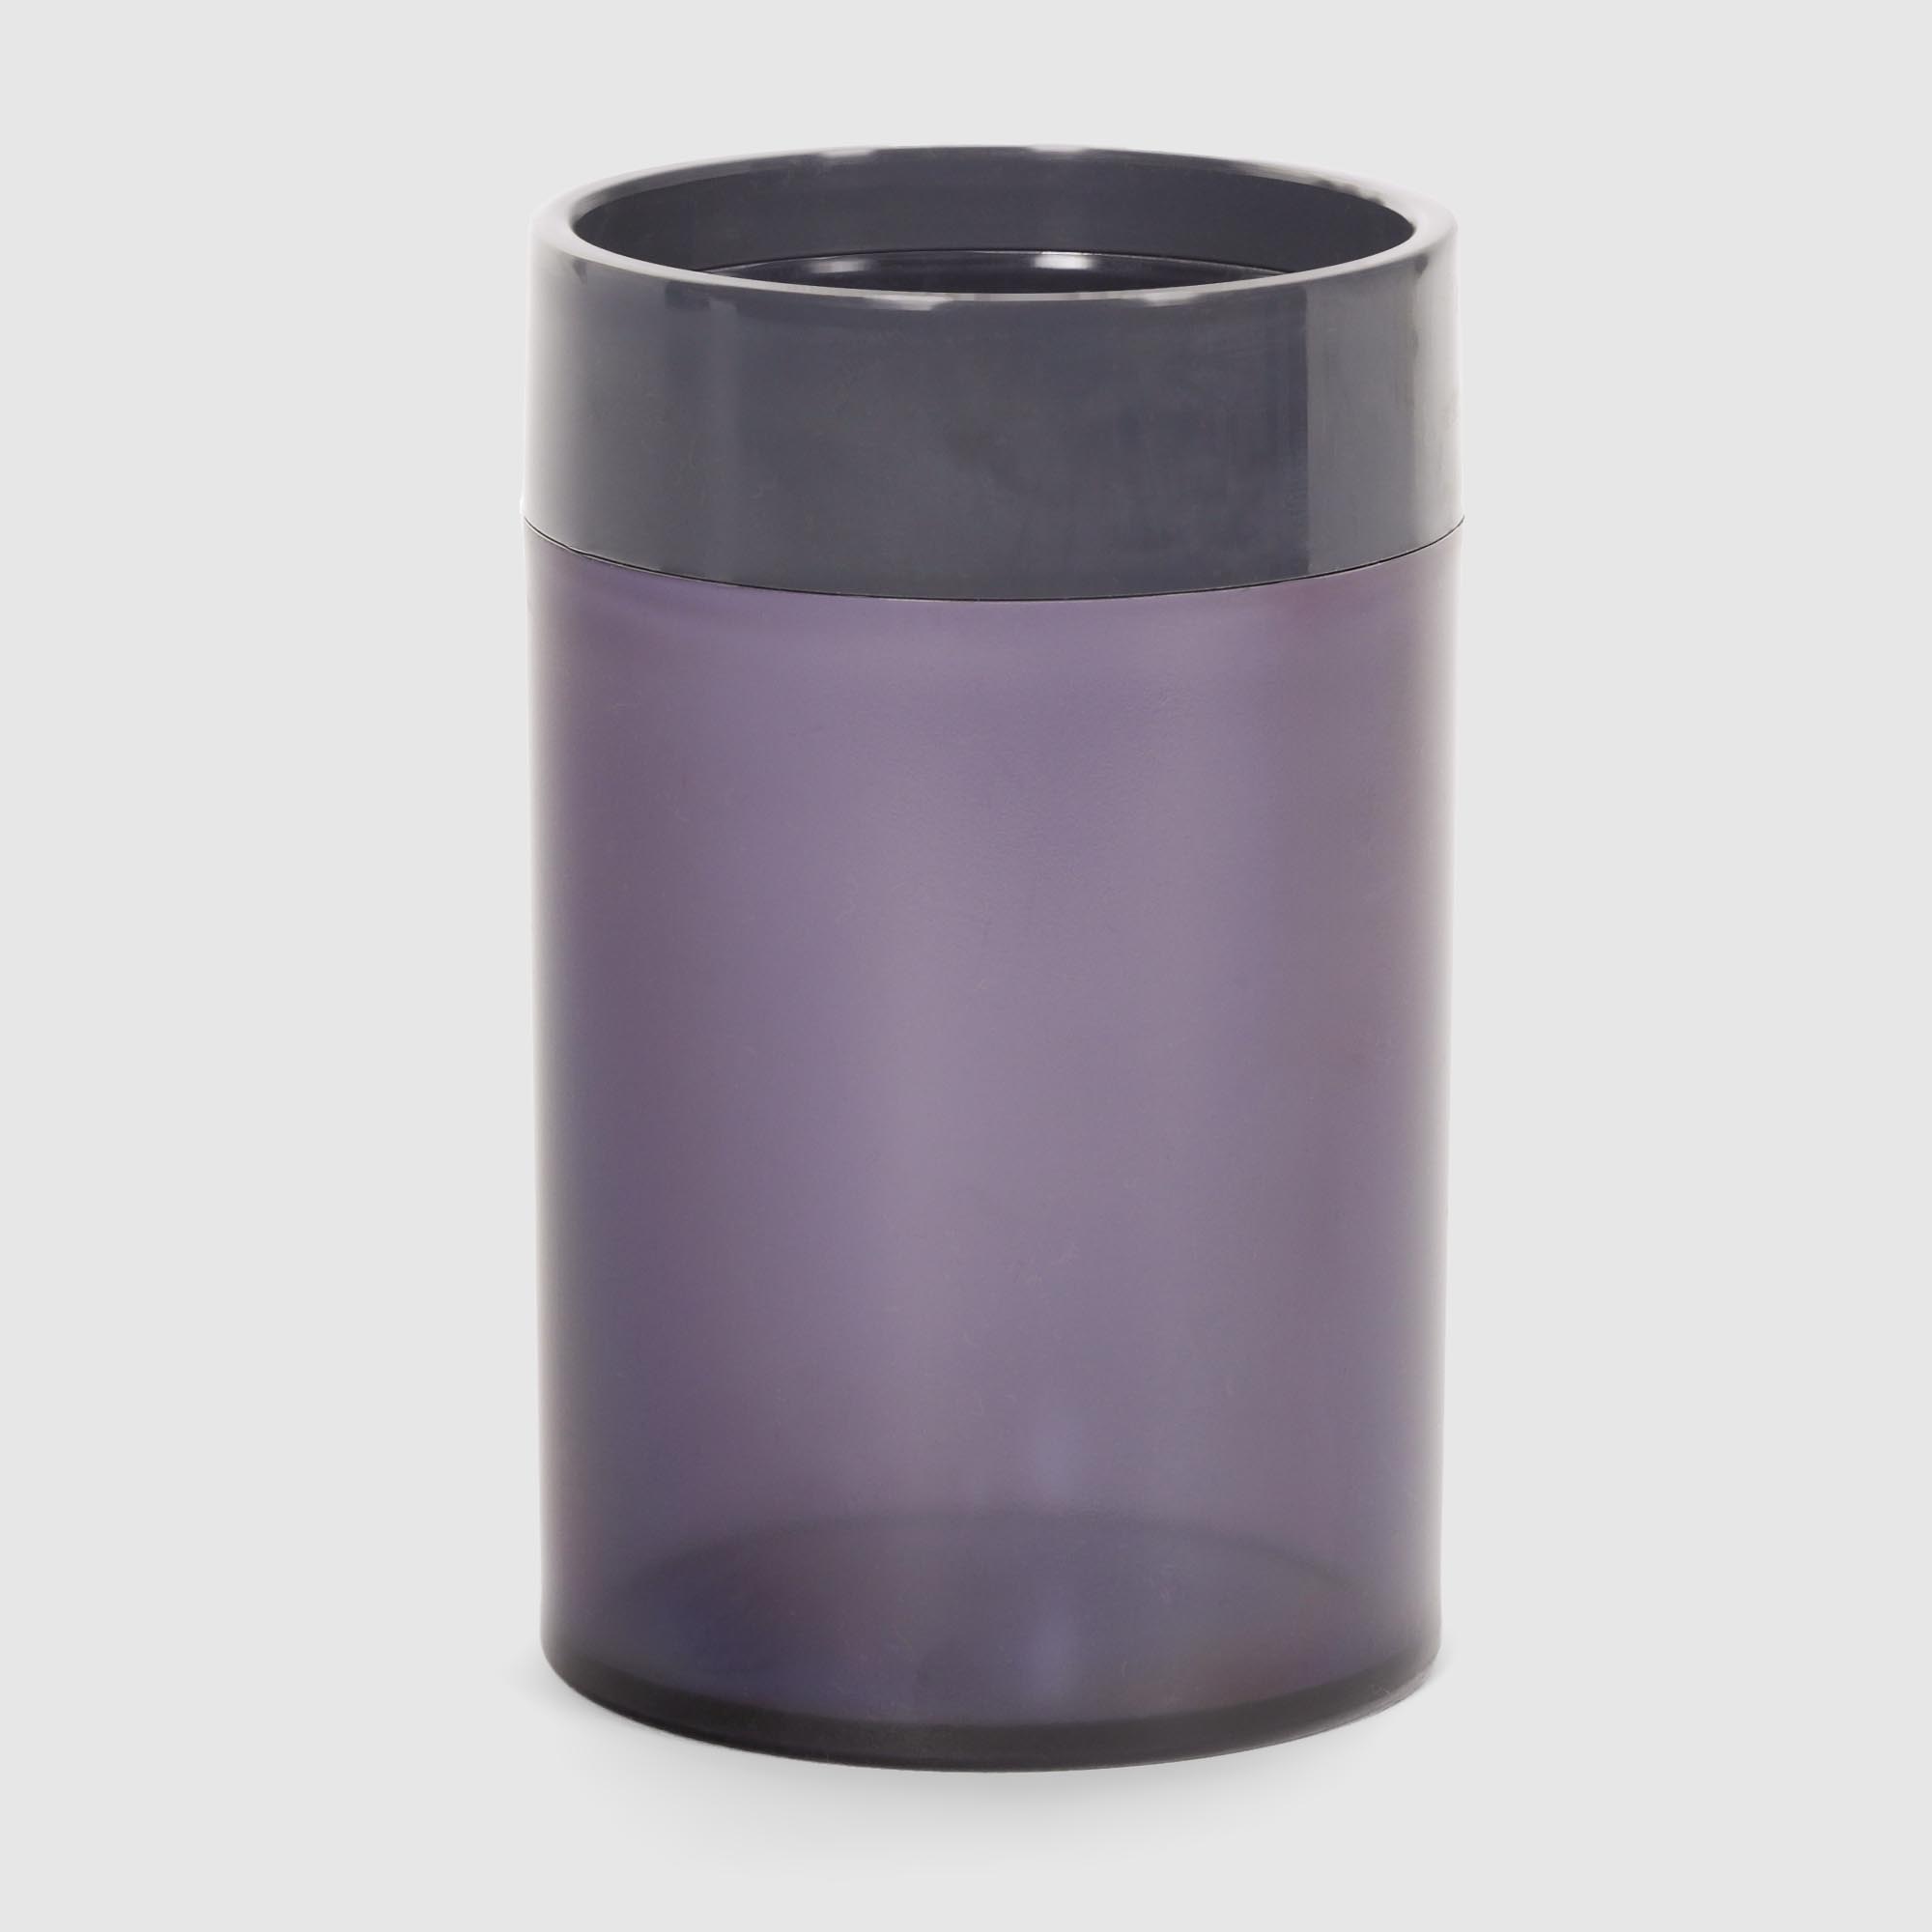 Стакан для зубных щеток Baroness Sanitary фиолетовый в ассортименте стакан 280 мл с ситечком для заваривания pr 9320 280 в ассортименте